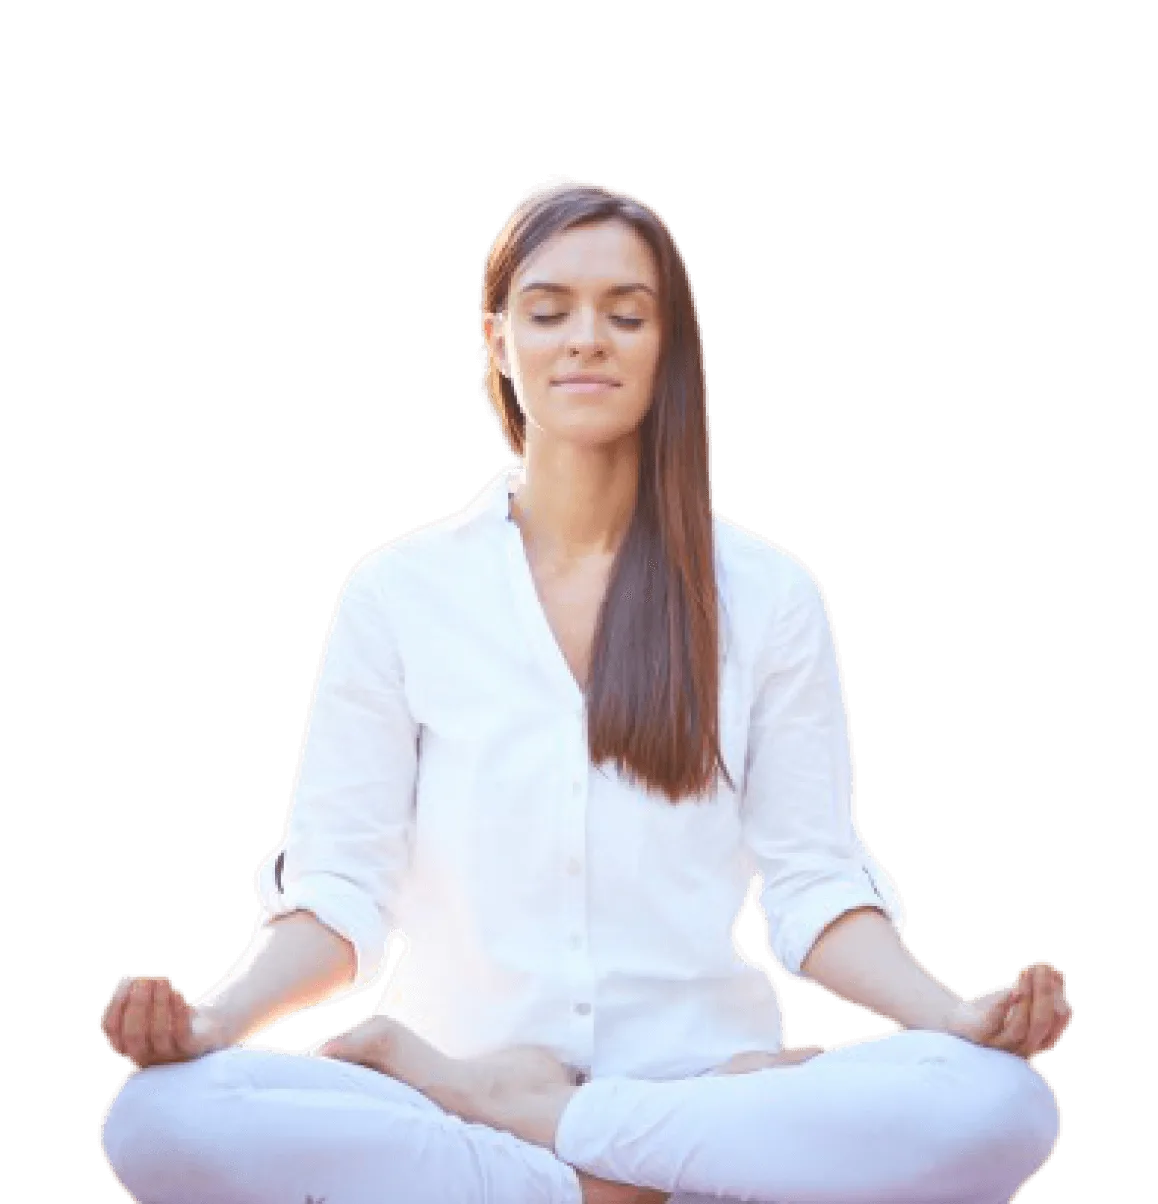 изображение девушки с длинными волосами в позе медитации